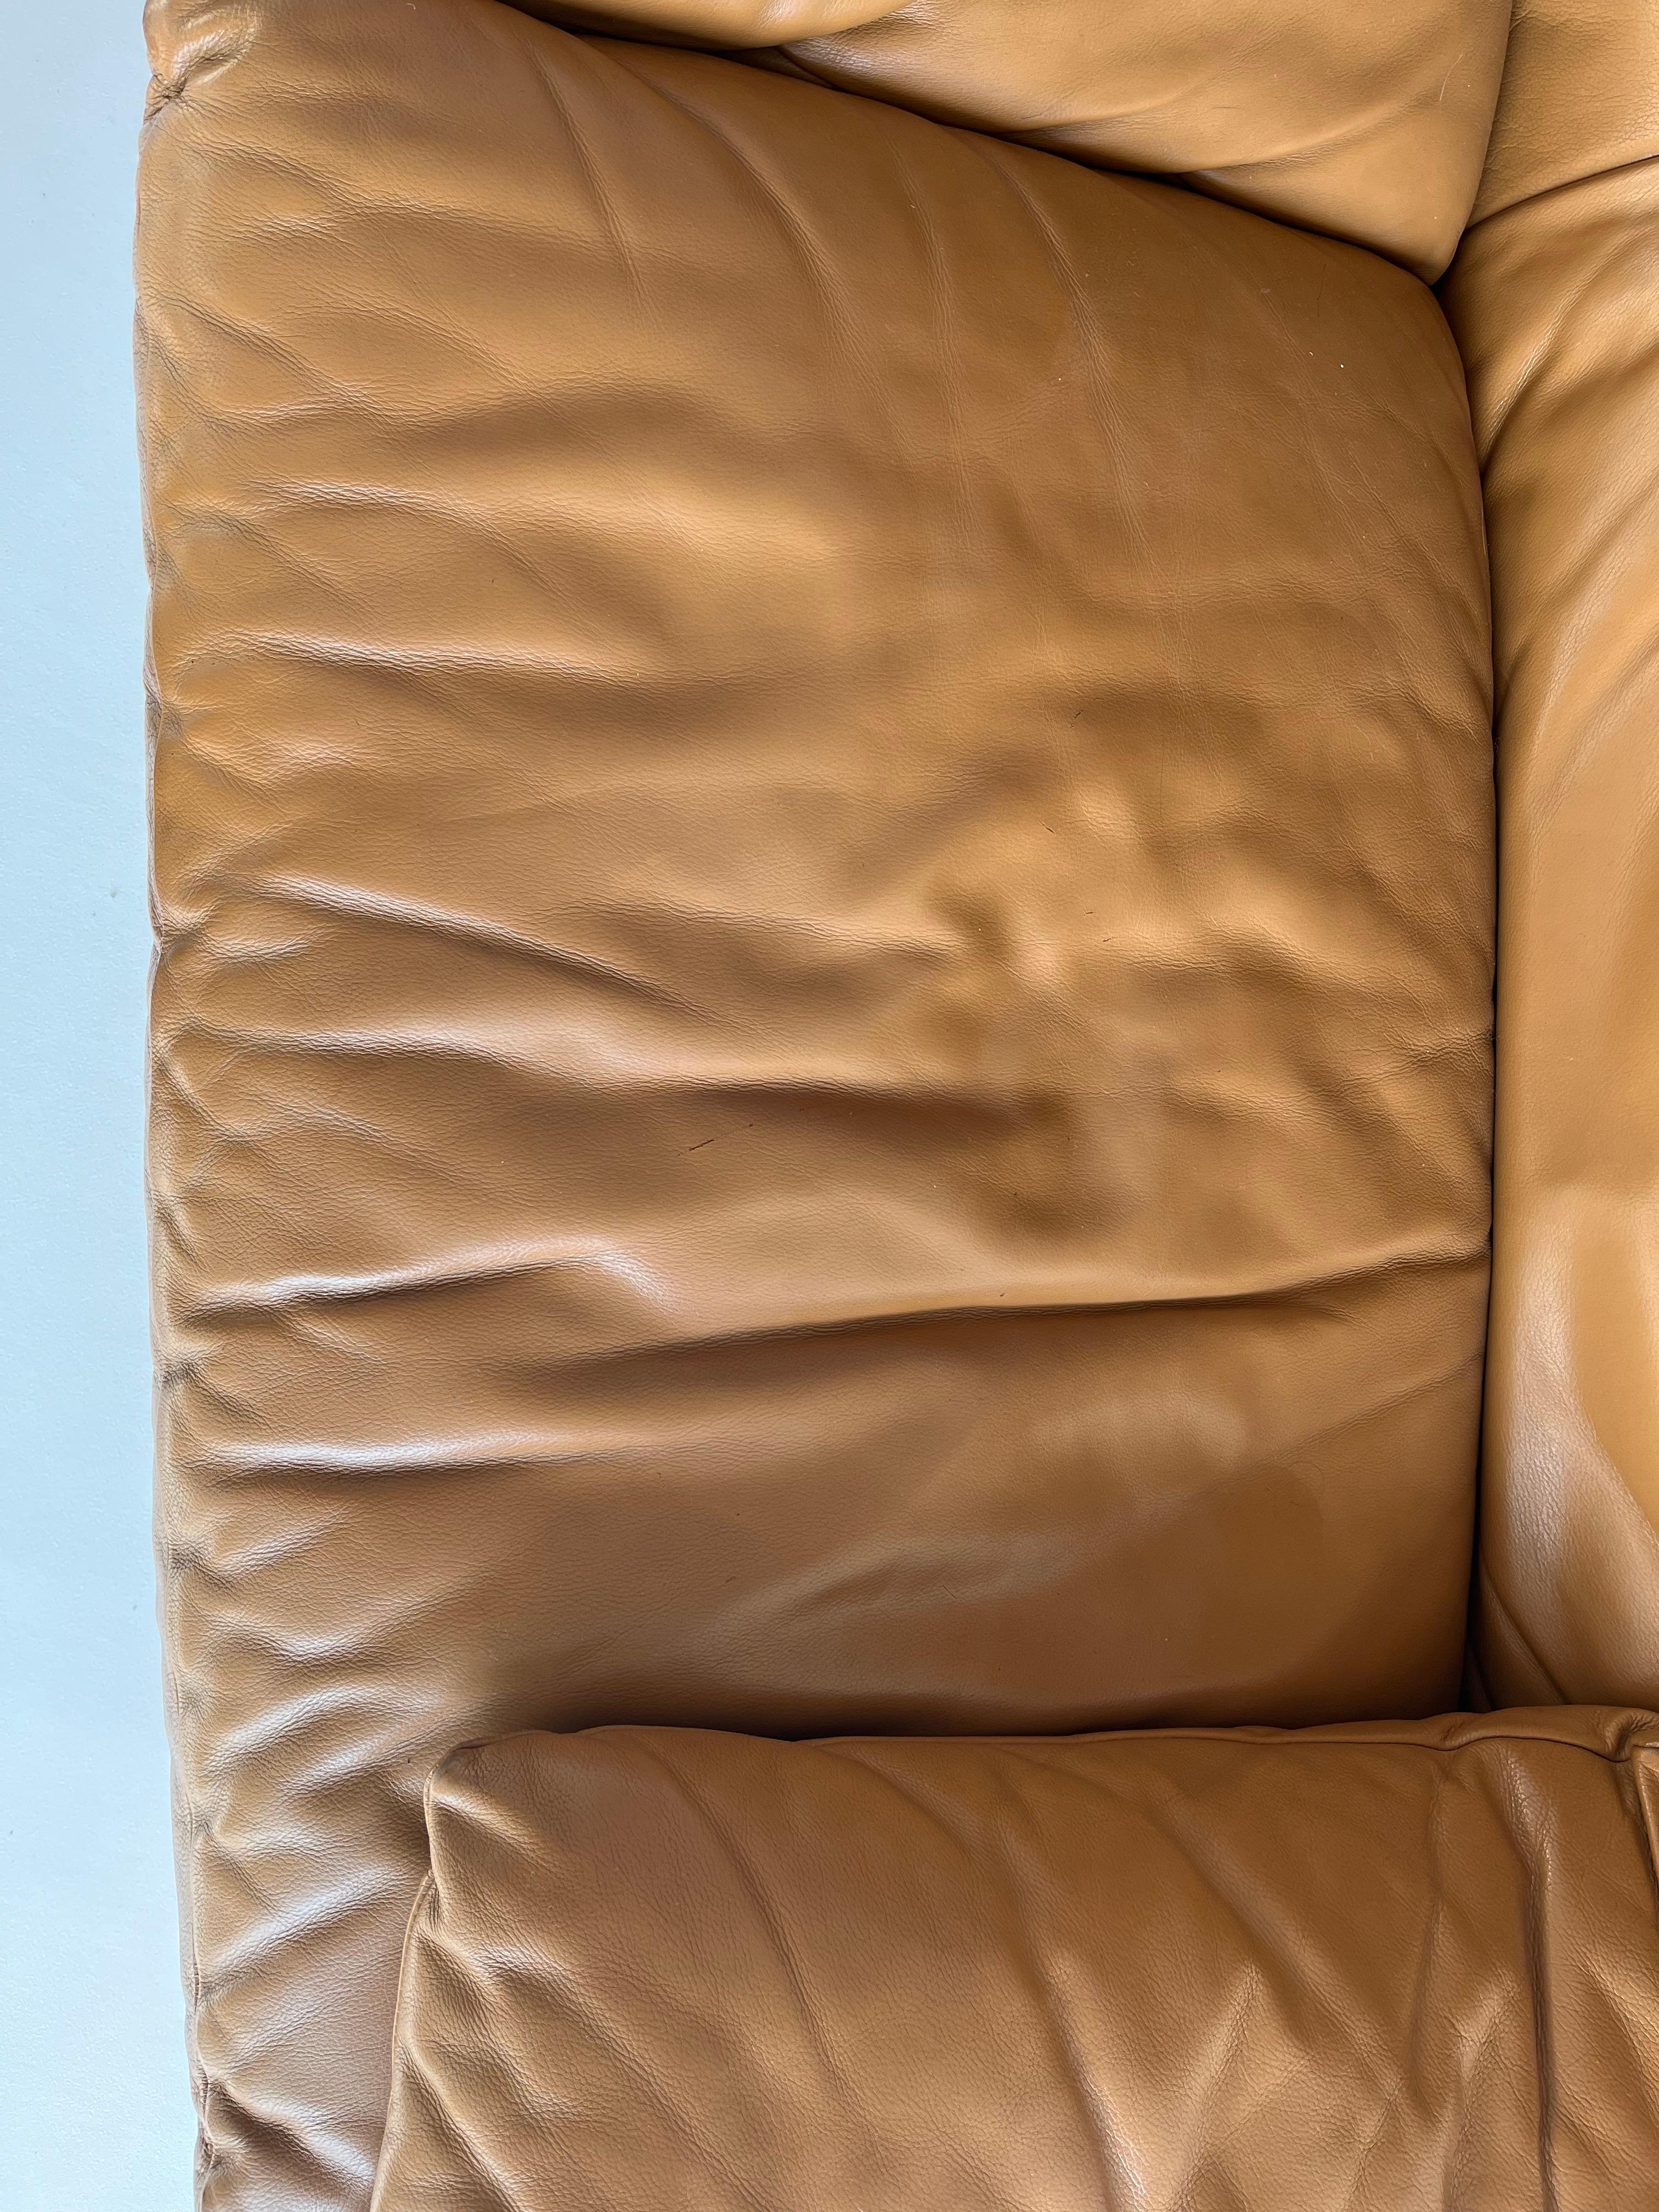 Leather Maralunga sofa by Vico Magistretti for Cassina